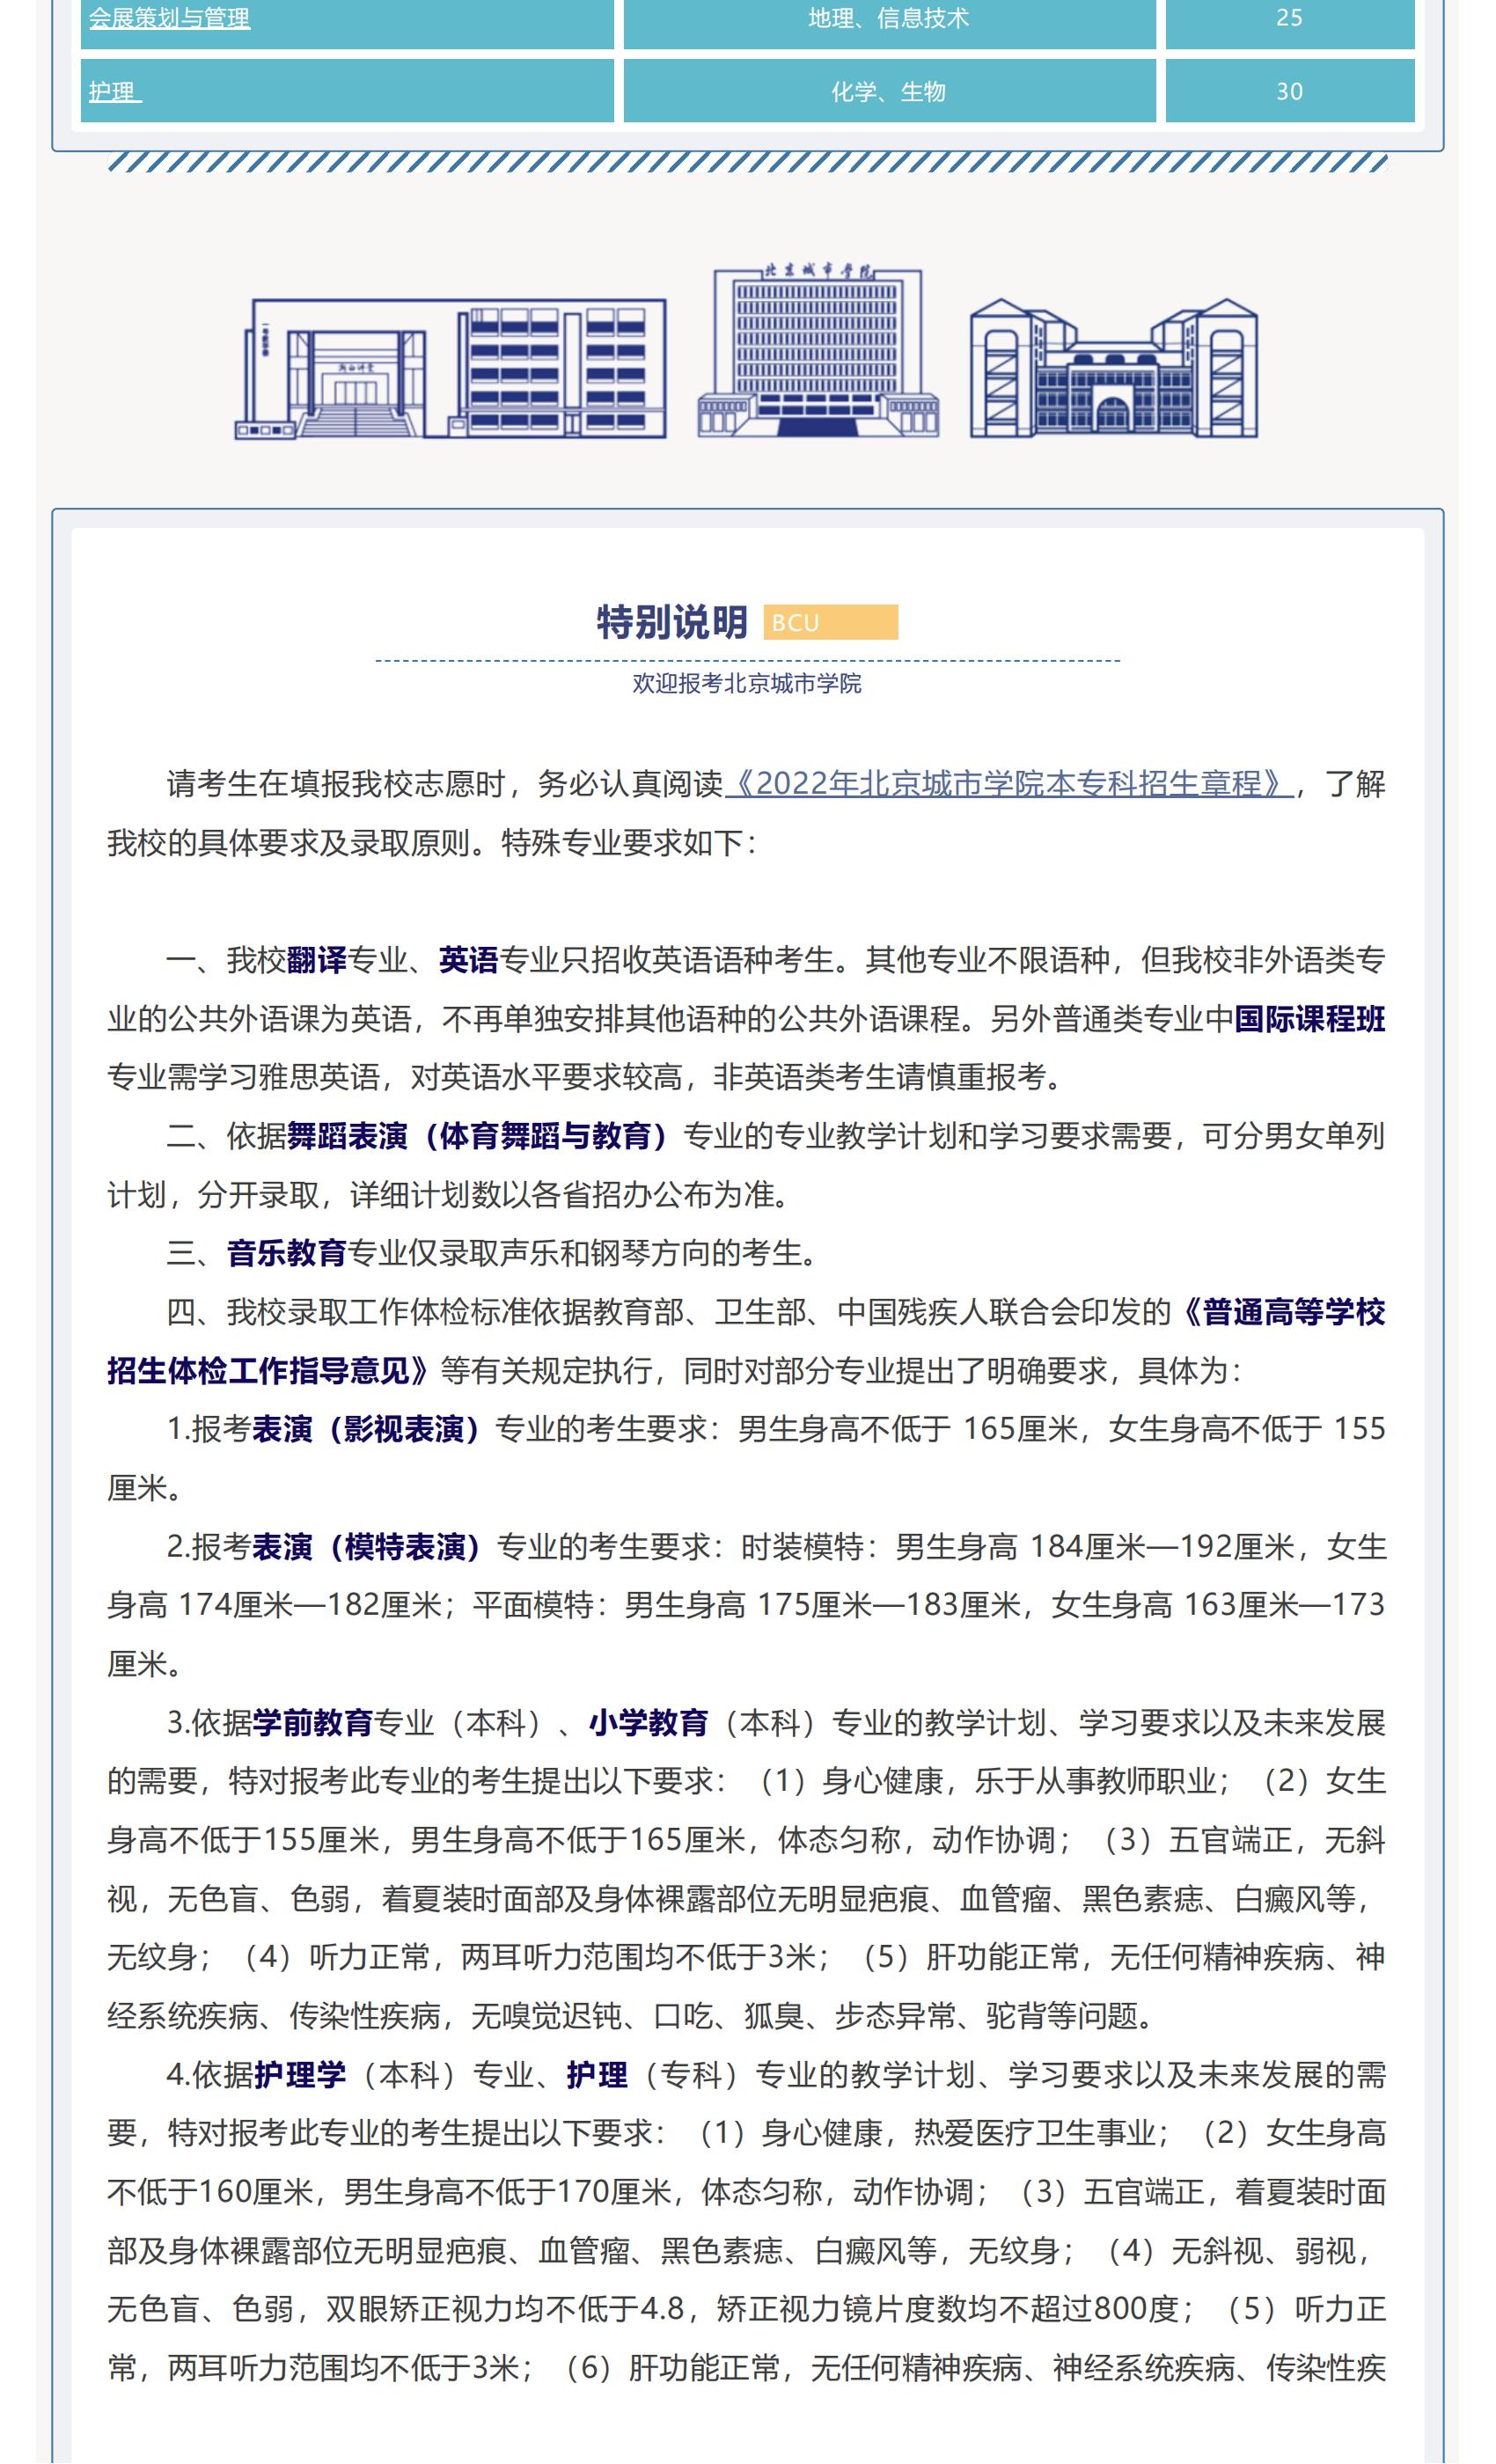 高招快讯 _ 北京城市学院2022年招生计划权威发布_04.jpg